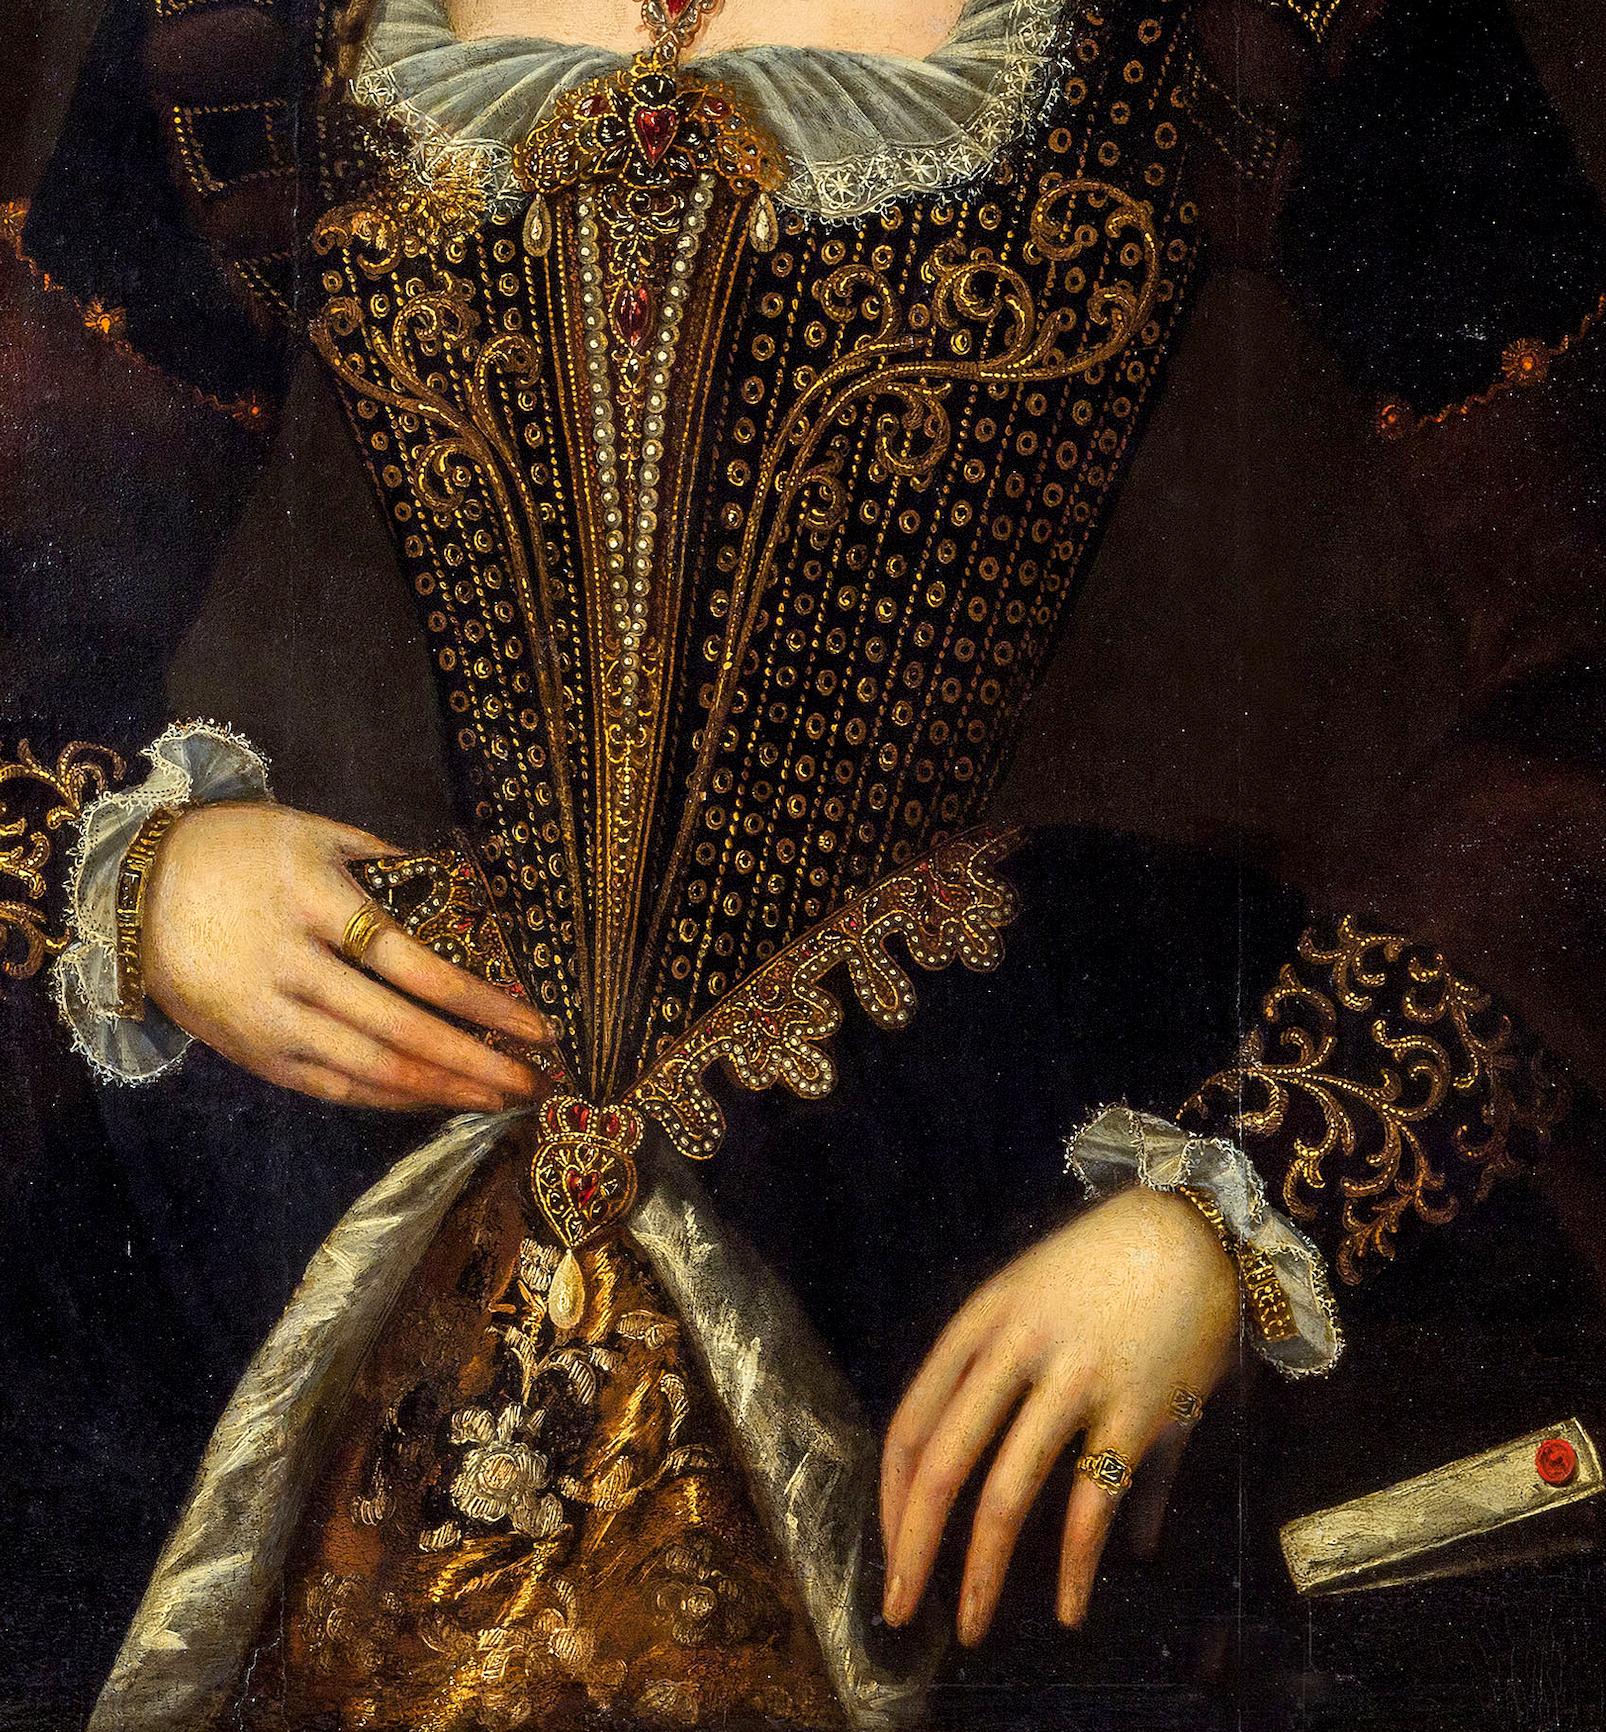 Portrait Noble Woman Italian School Paint Oil on table 16th Century Italy Art 3